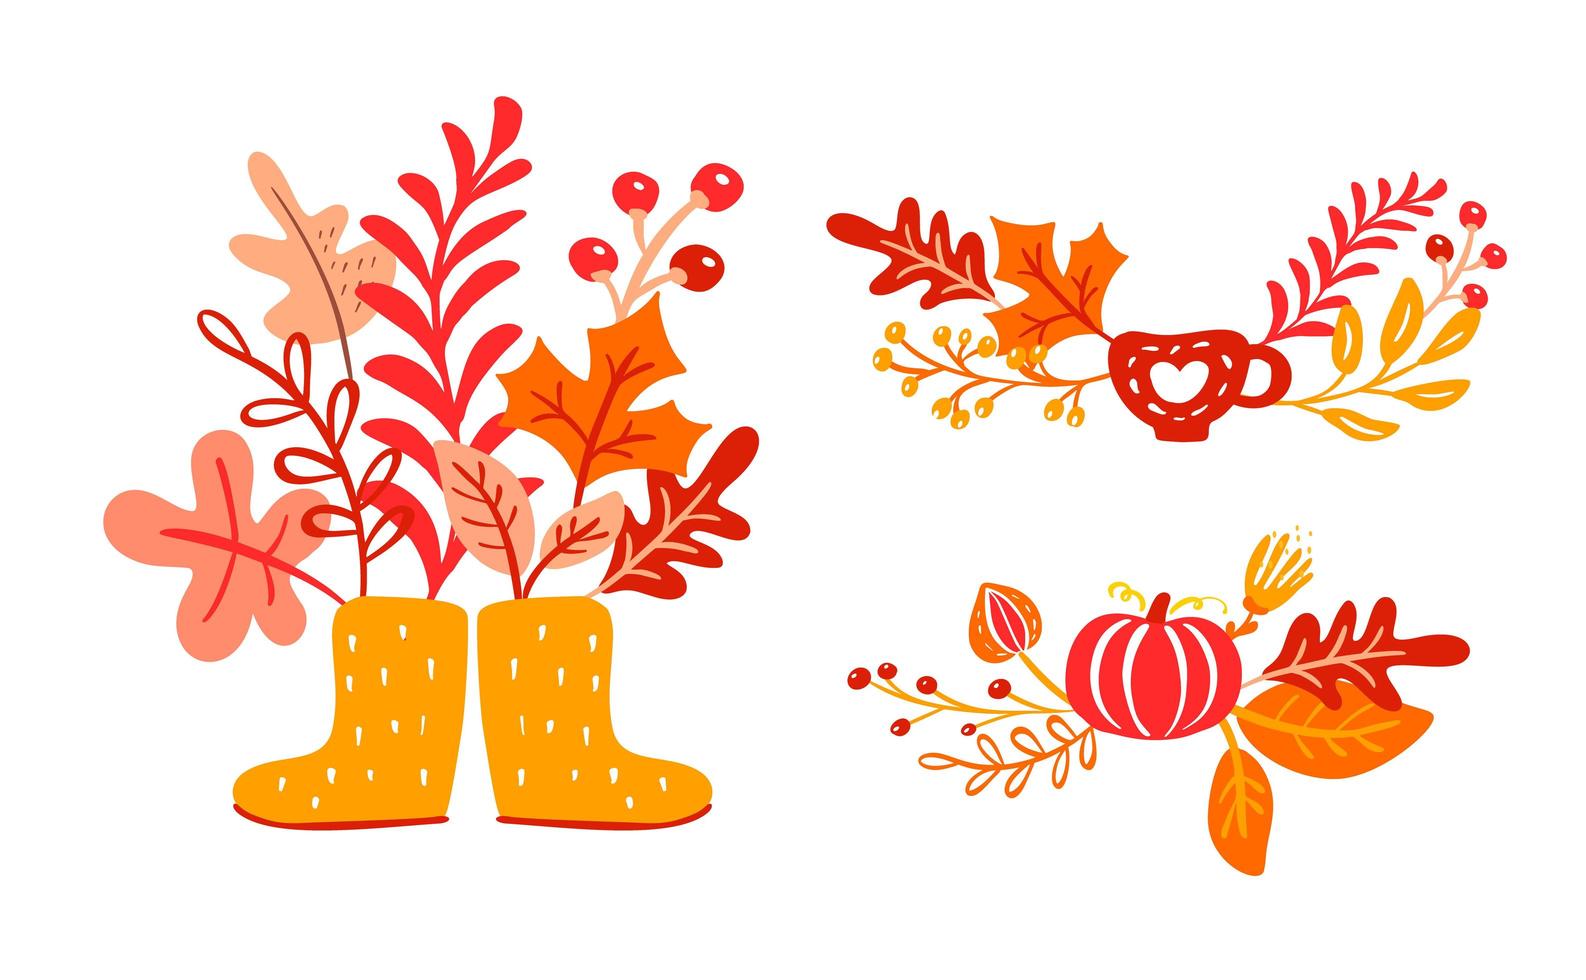 gele rubberen laarzen met herfstbladeren boeket. oranje bladeren van esdoorn met kop, pompoen met gebladerte eik, herfst natuur seizoen poster thanksgiving ontwerp vector